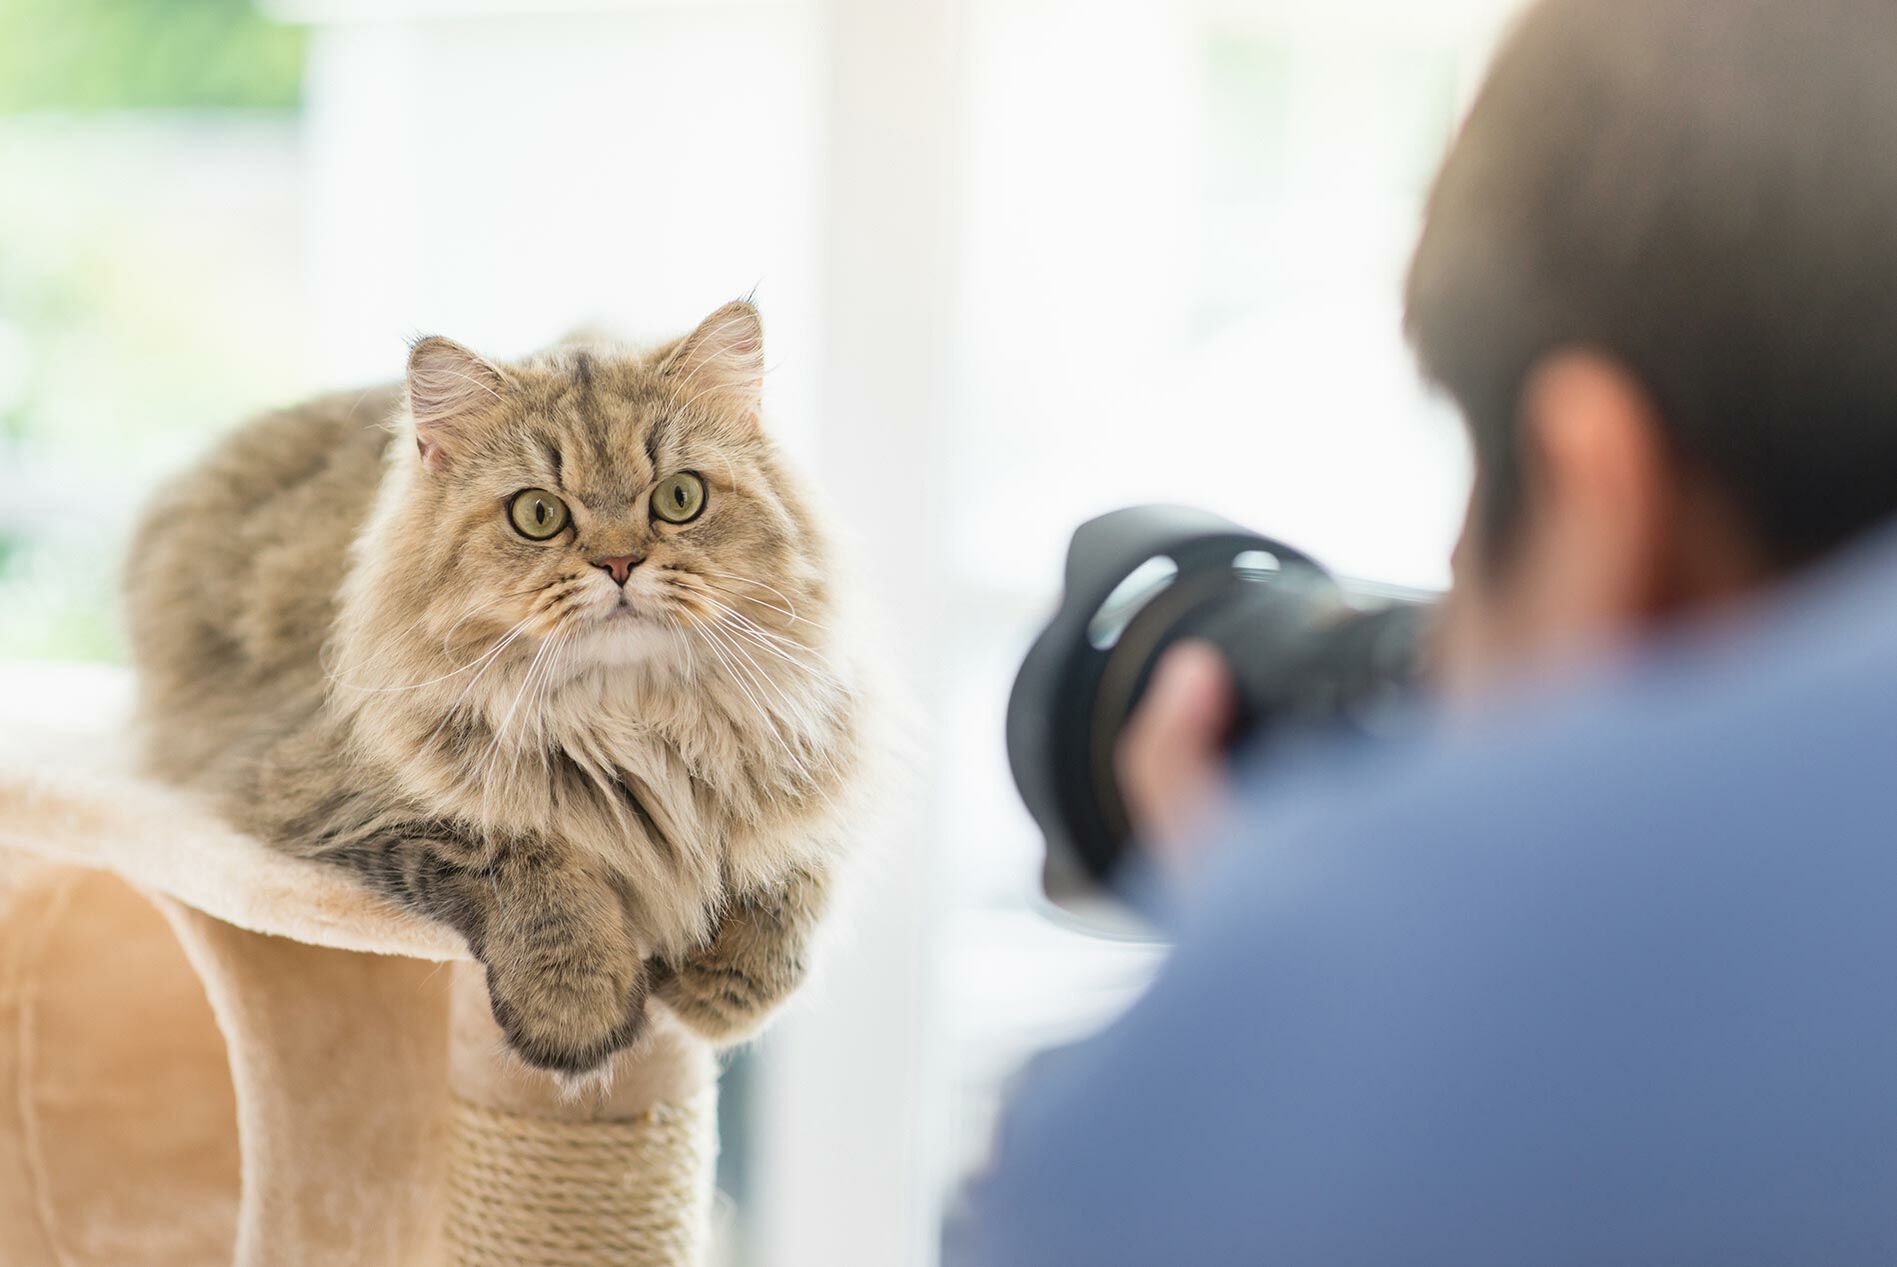 Fotograf macht ein Foto seiner Katze.